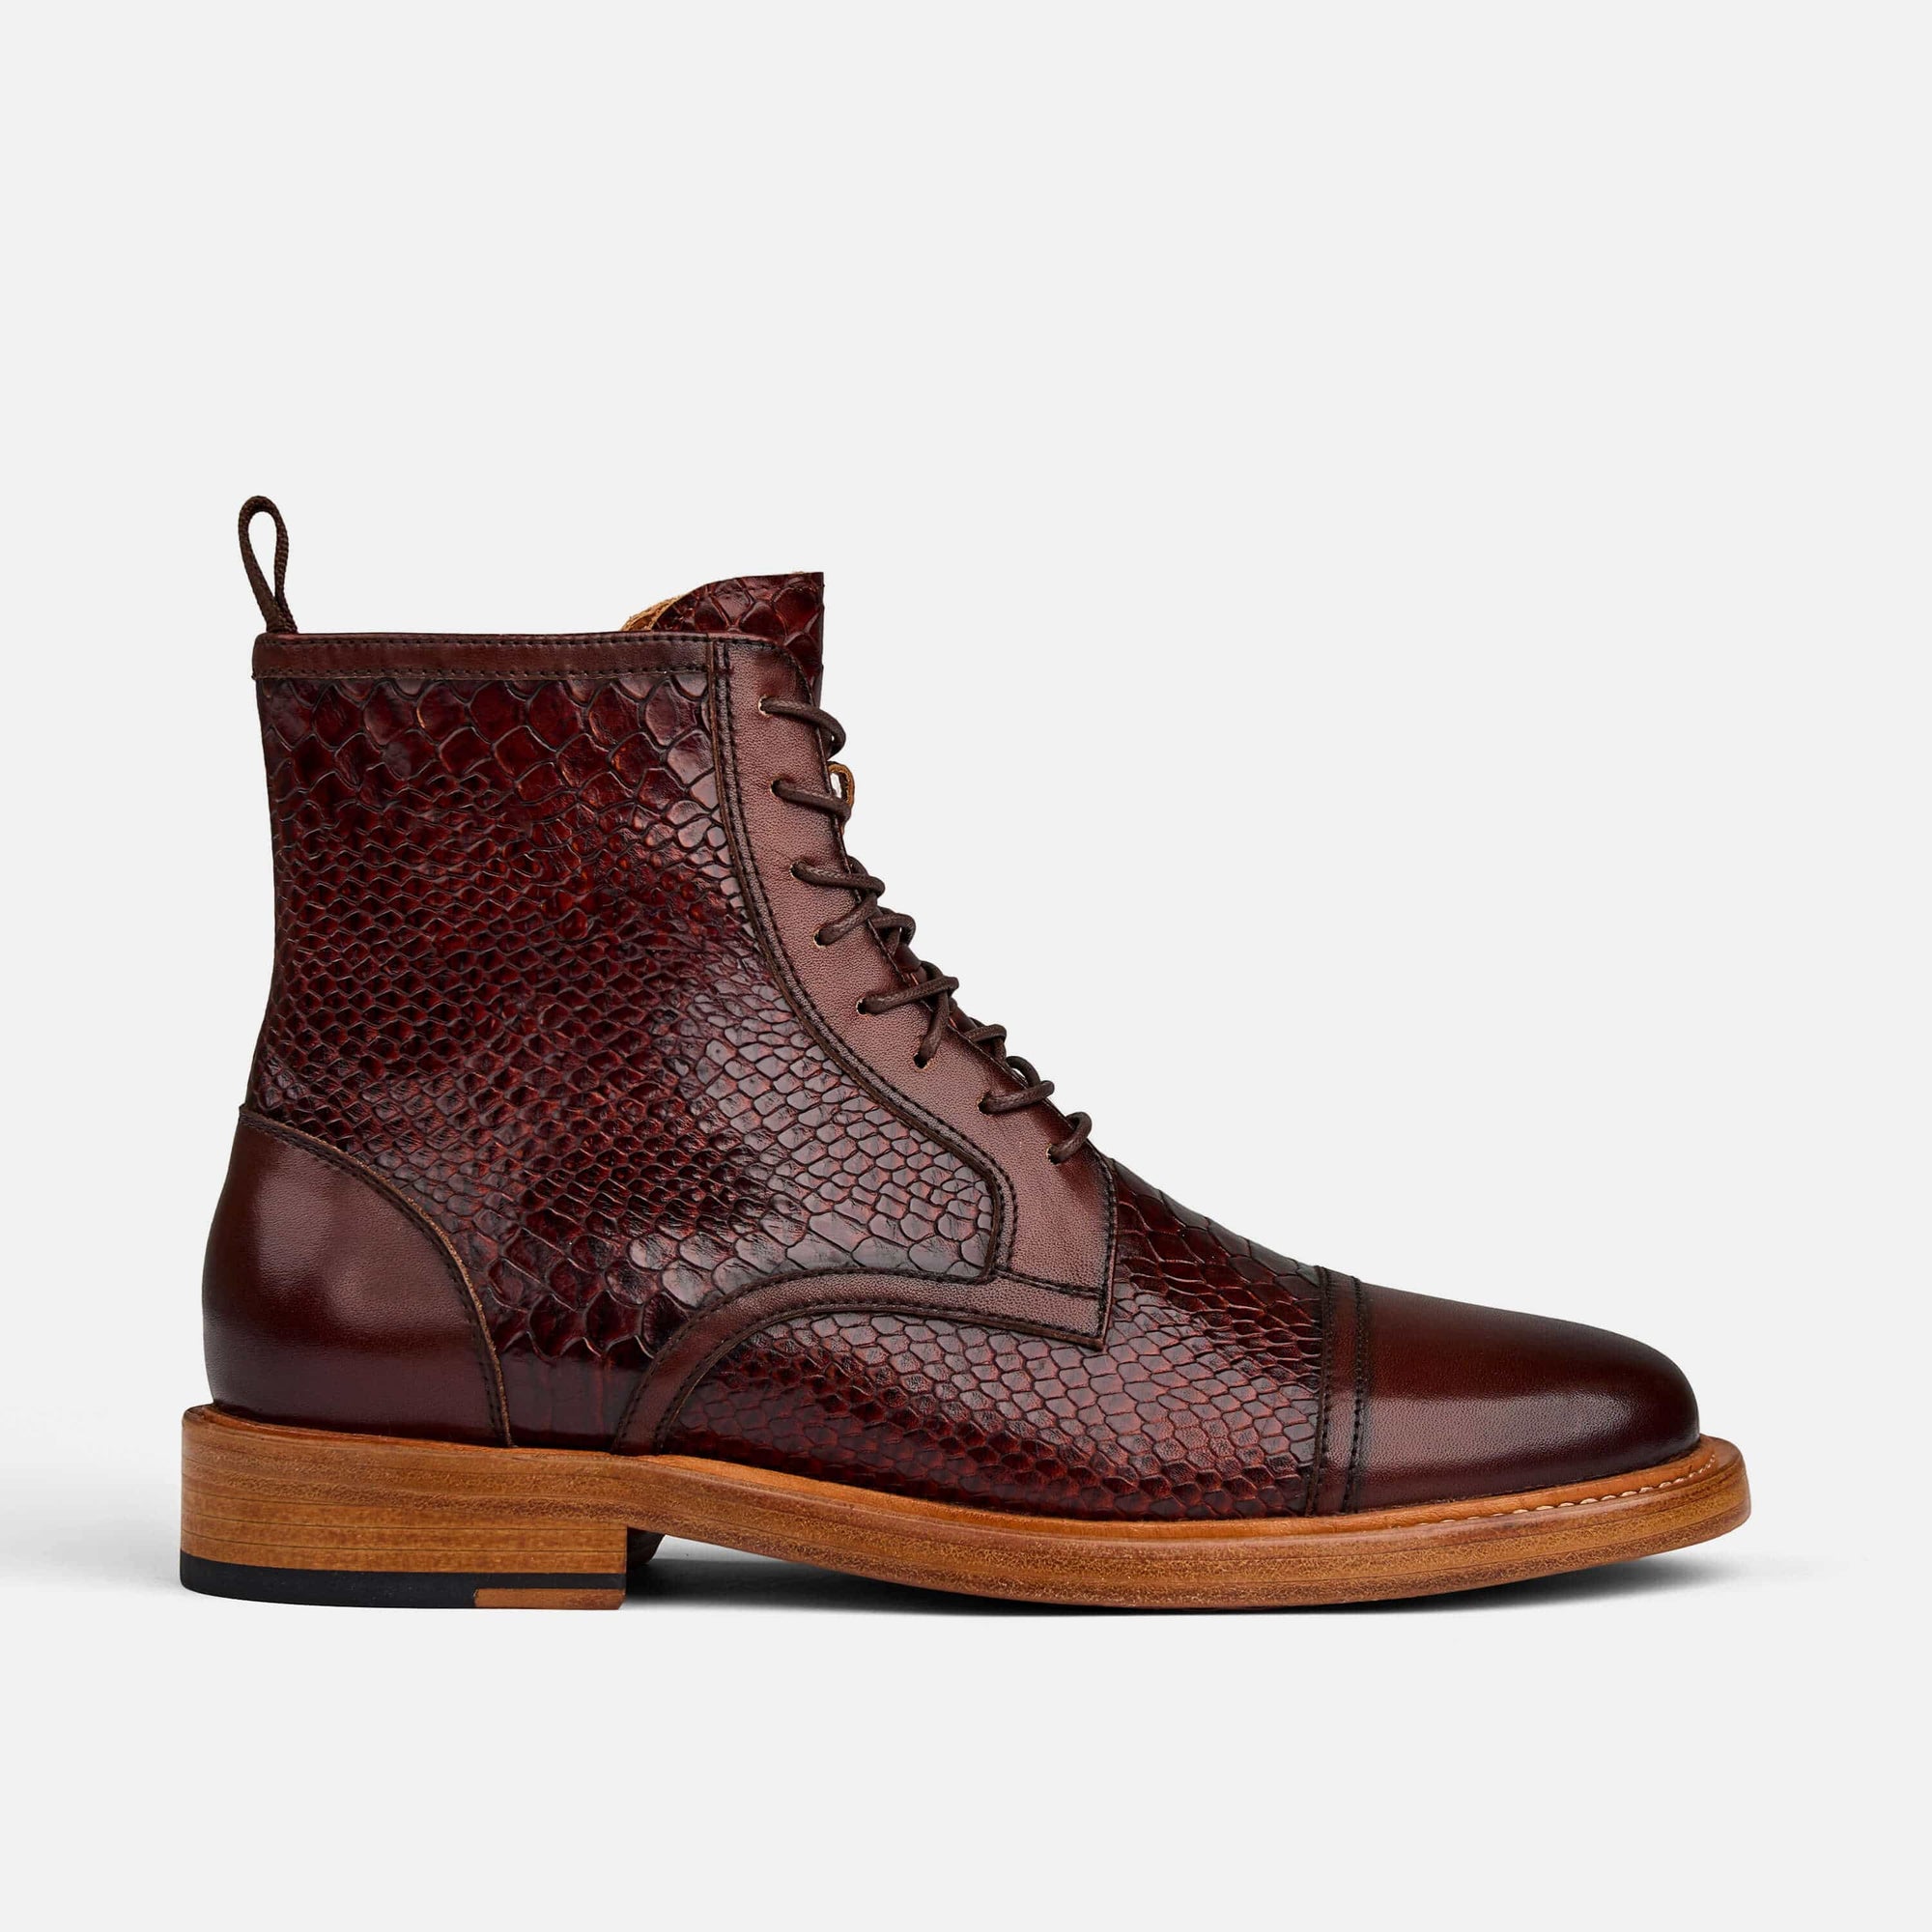 Mahogany Snakeskin Leather Cap Toe Boots